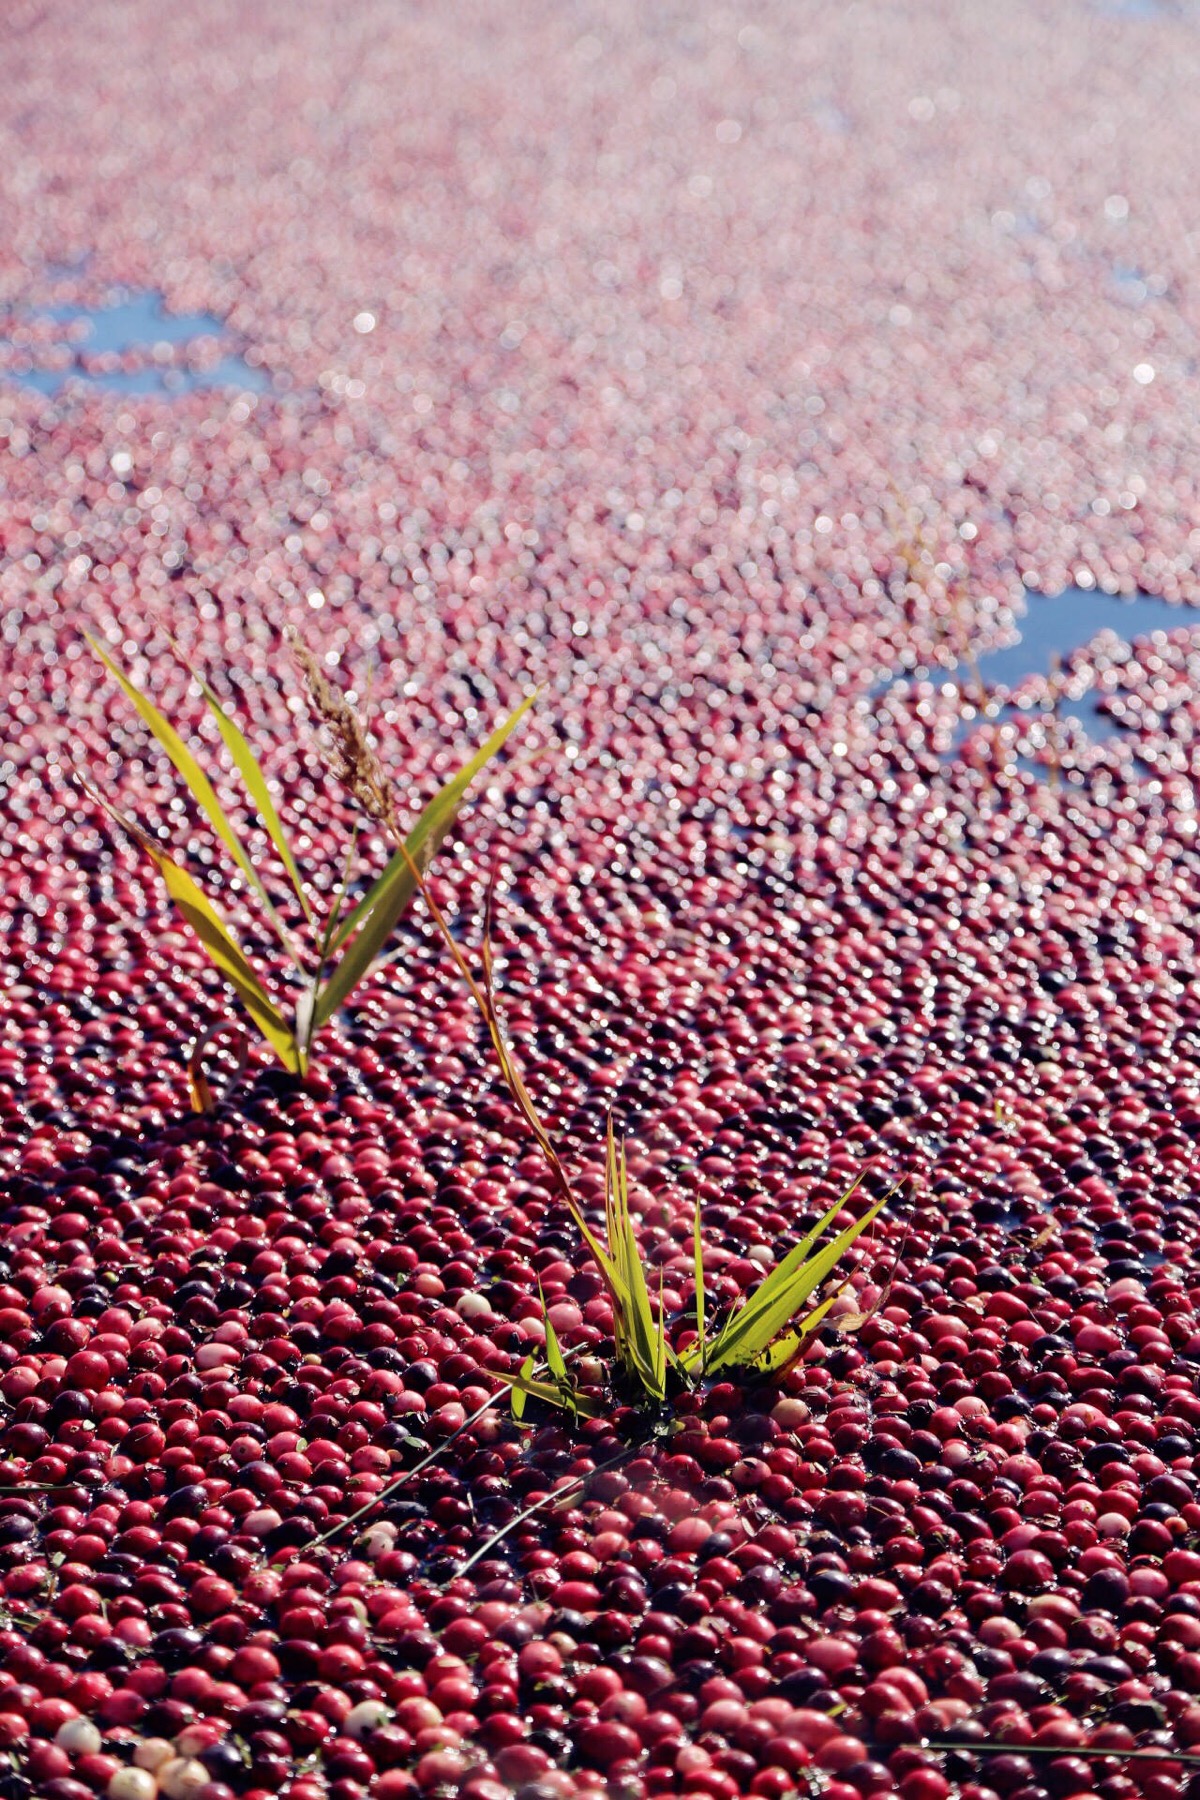 蔓越莓(cranberry)为常绿矮灌木,红色浆果可做成果汁,果酱等